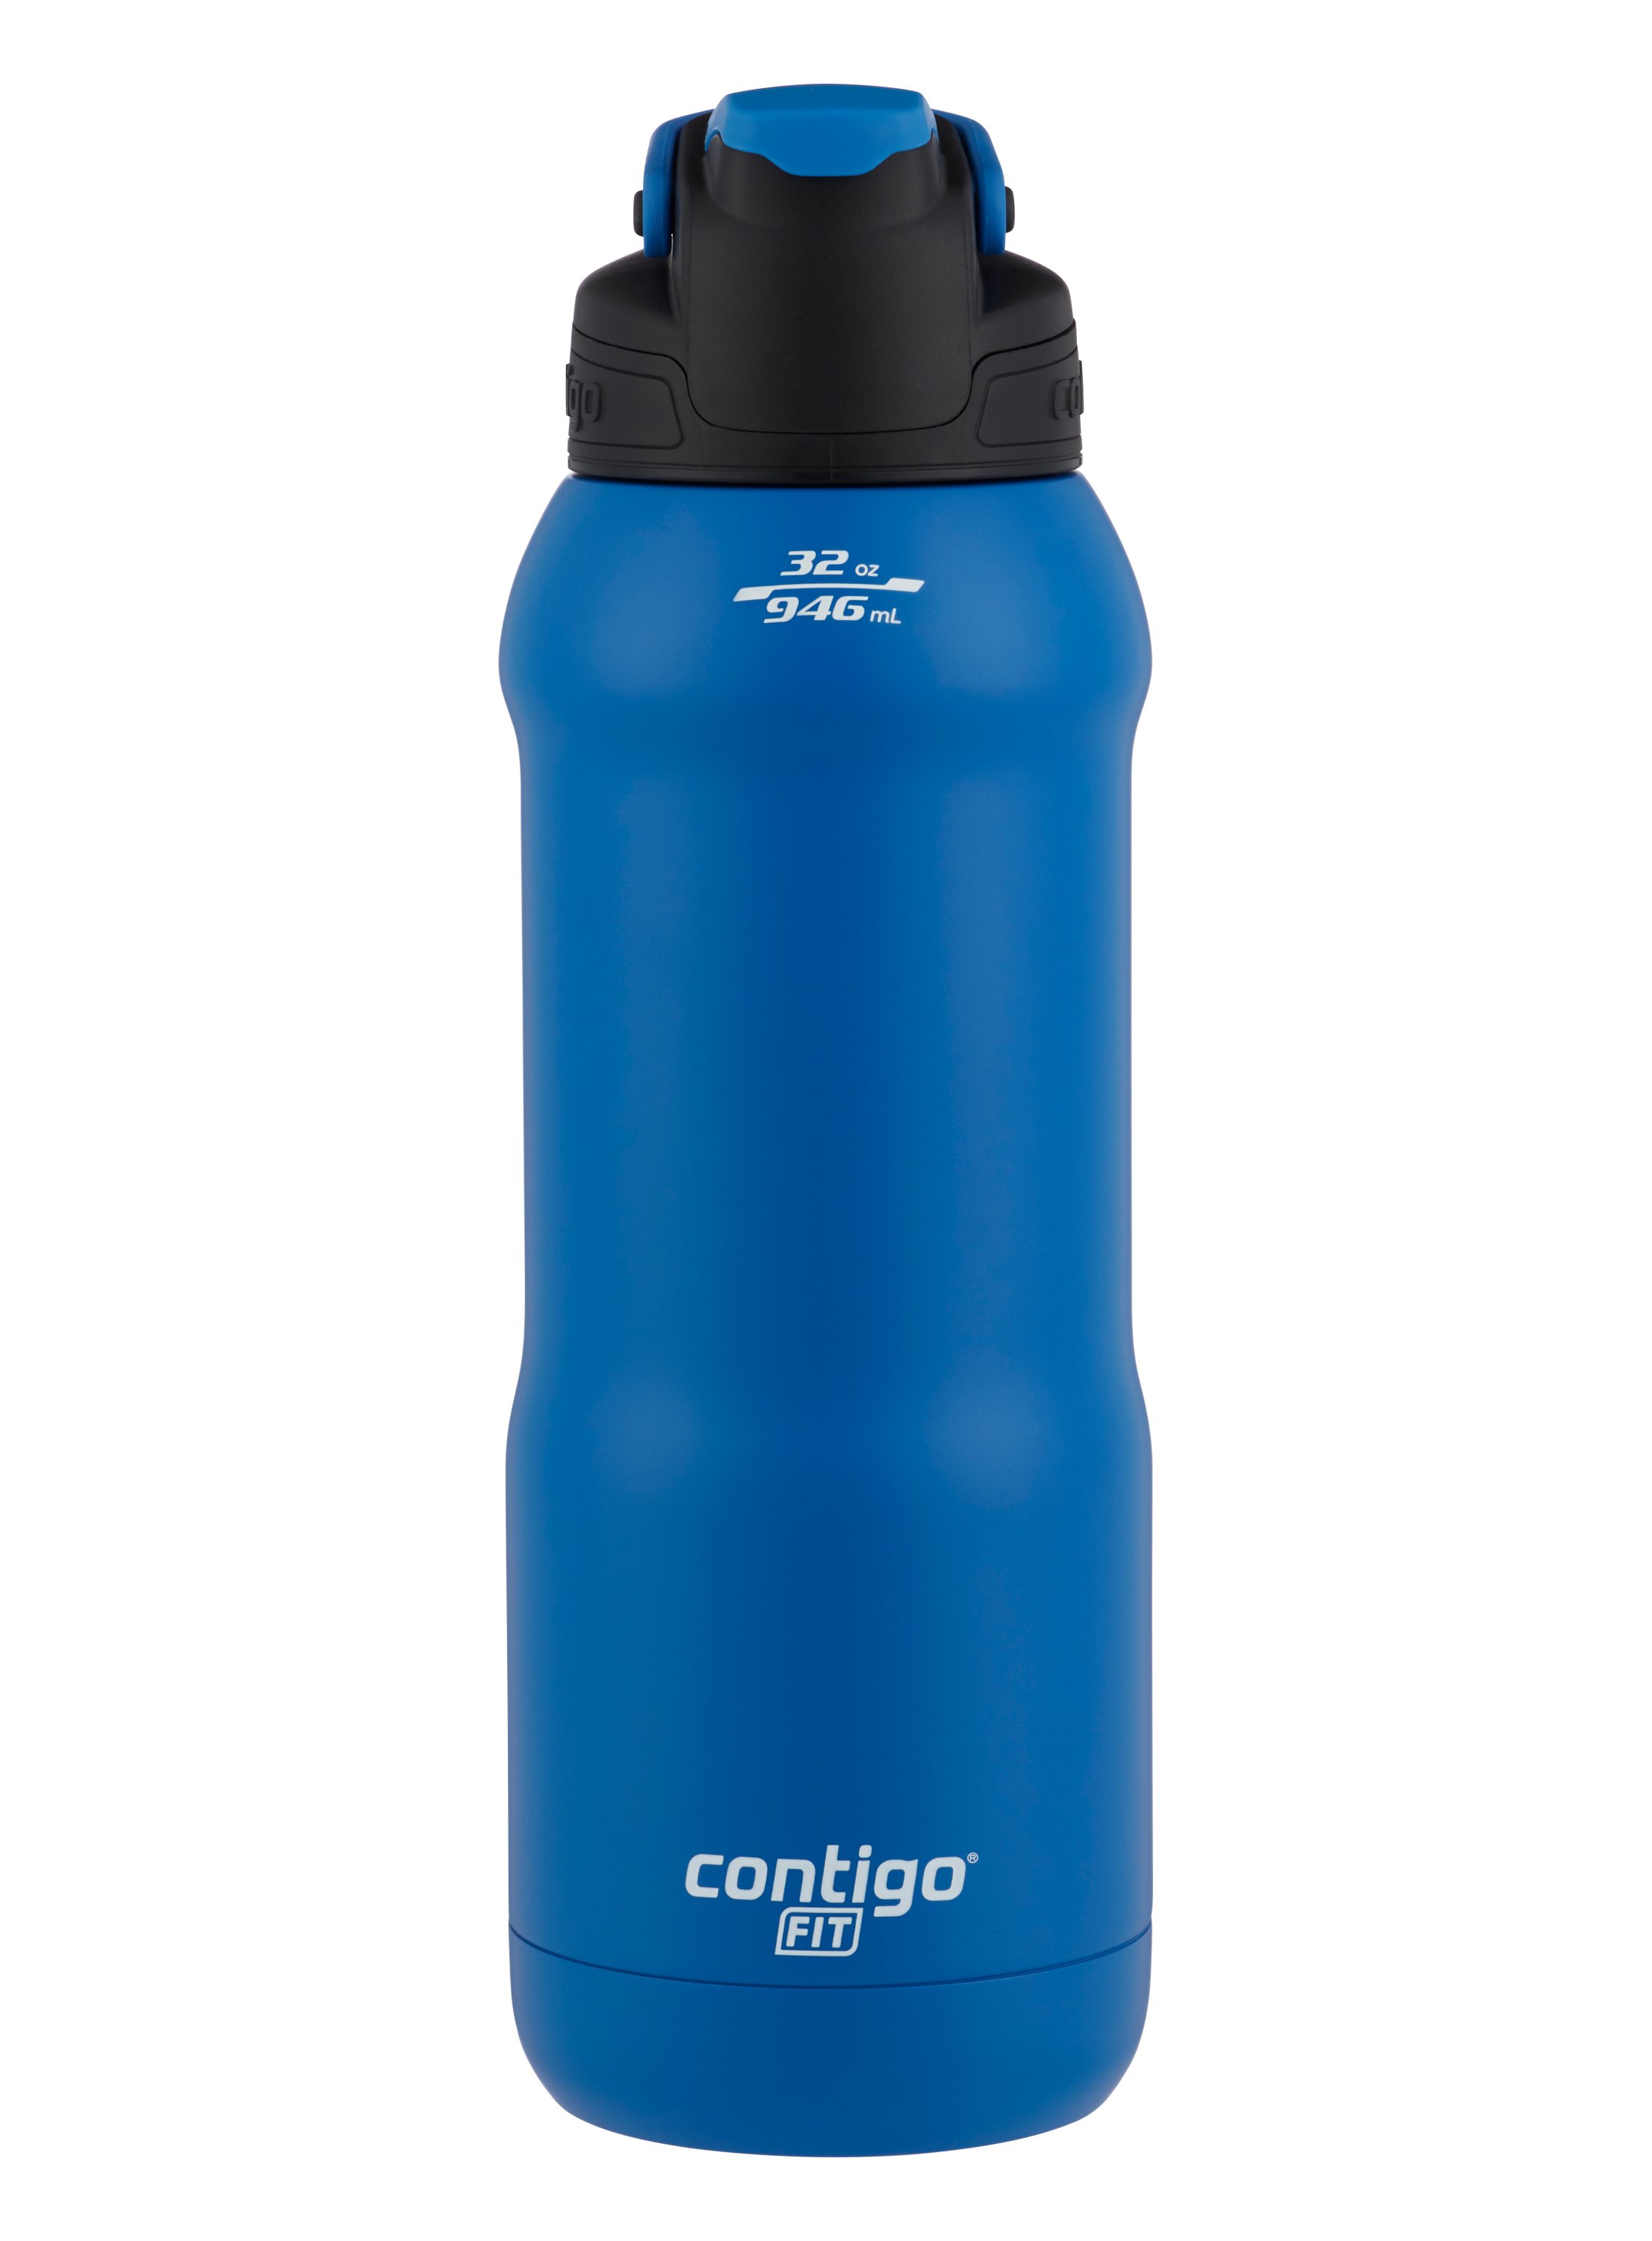 Contigo: Our Favorite Water Bottle